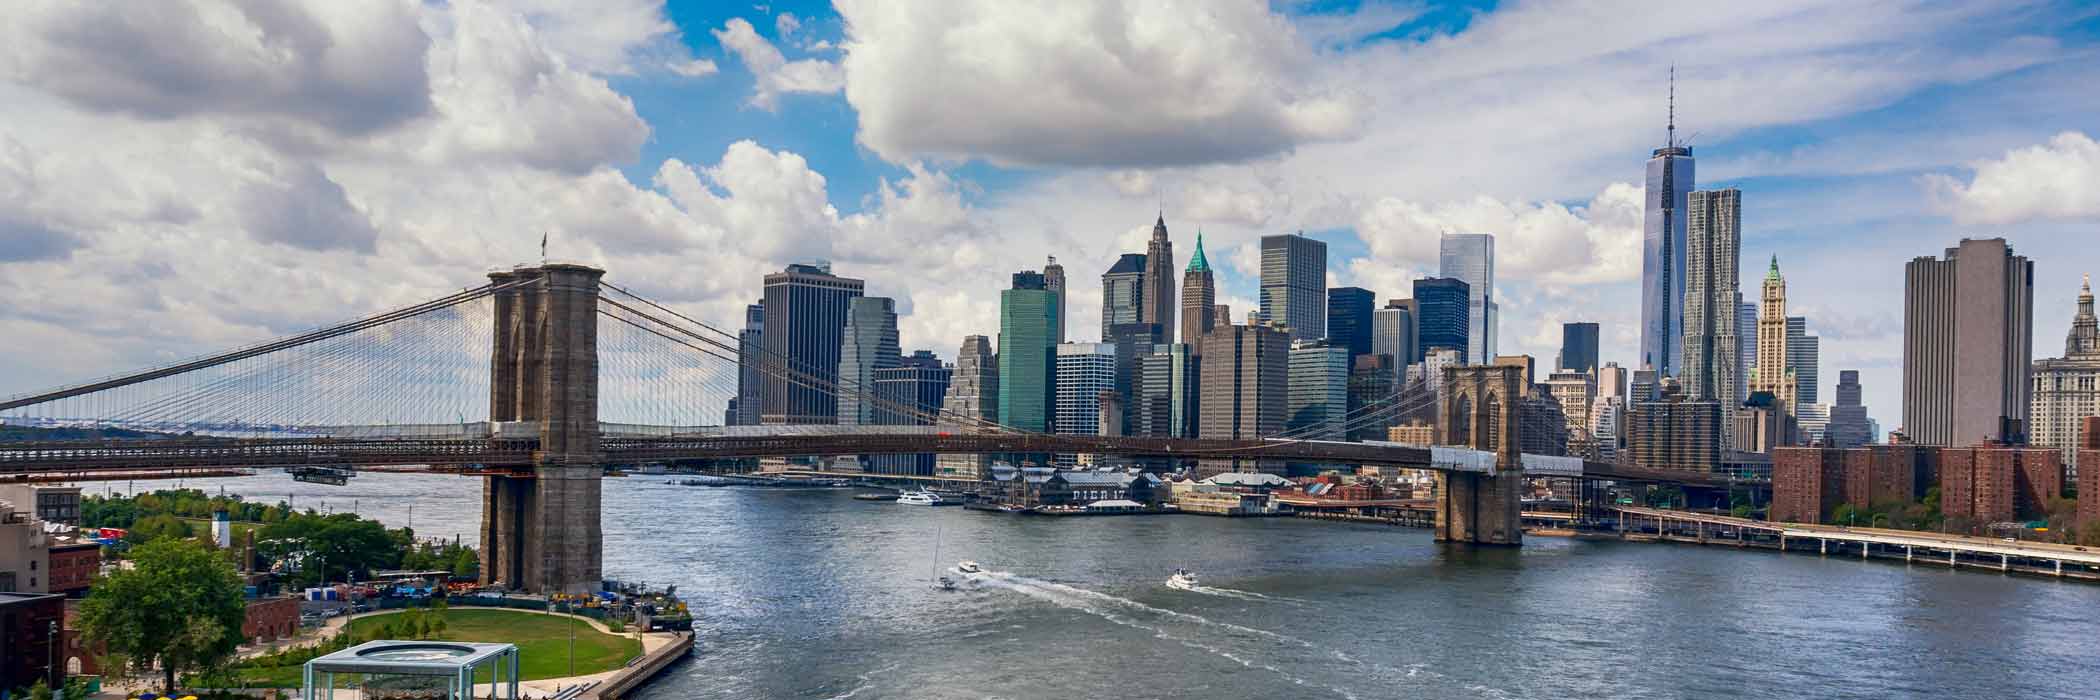 new york city breaks